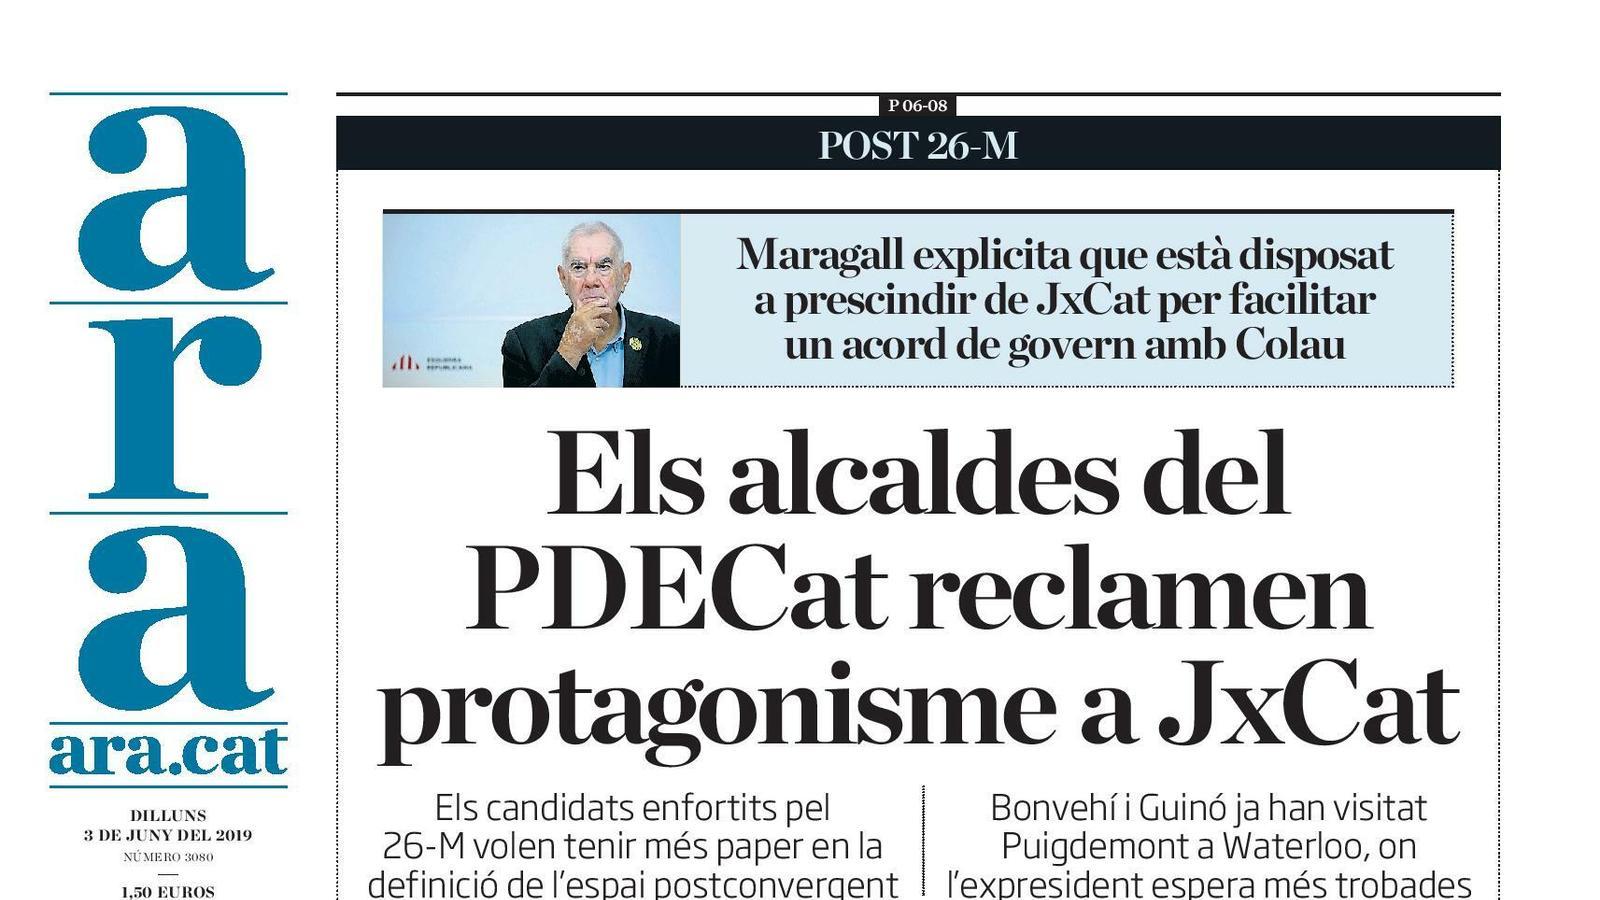 "Els alcaldes del PDECat reclamen protagonisme a JxCat", la portada de l'ARA